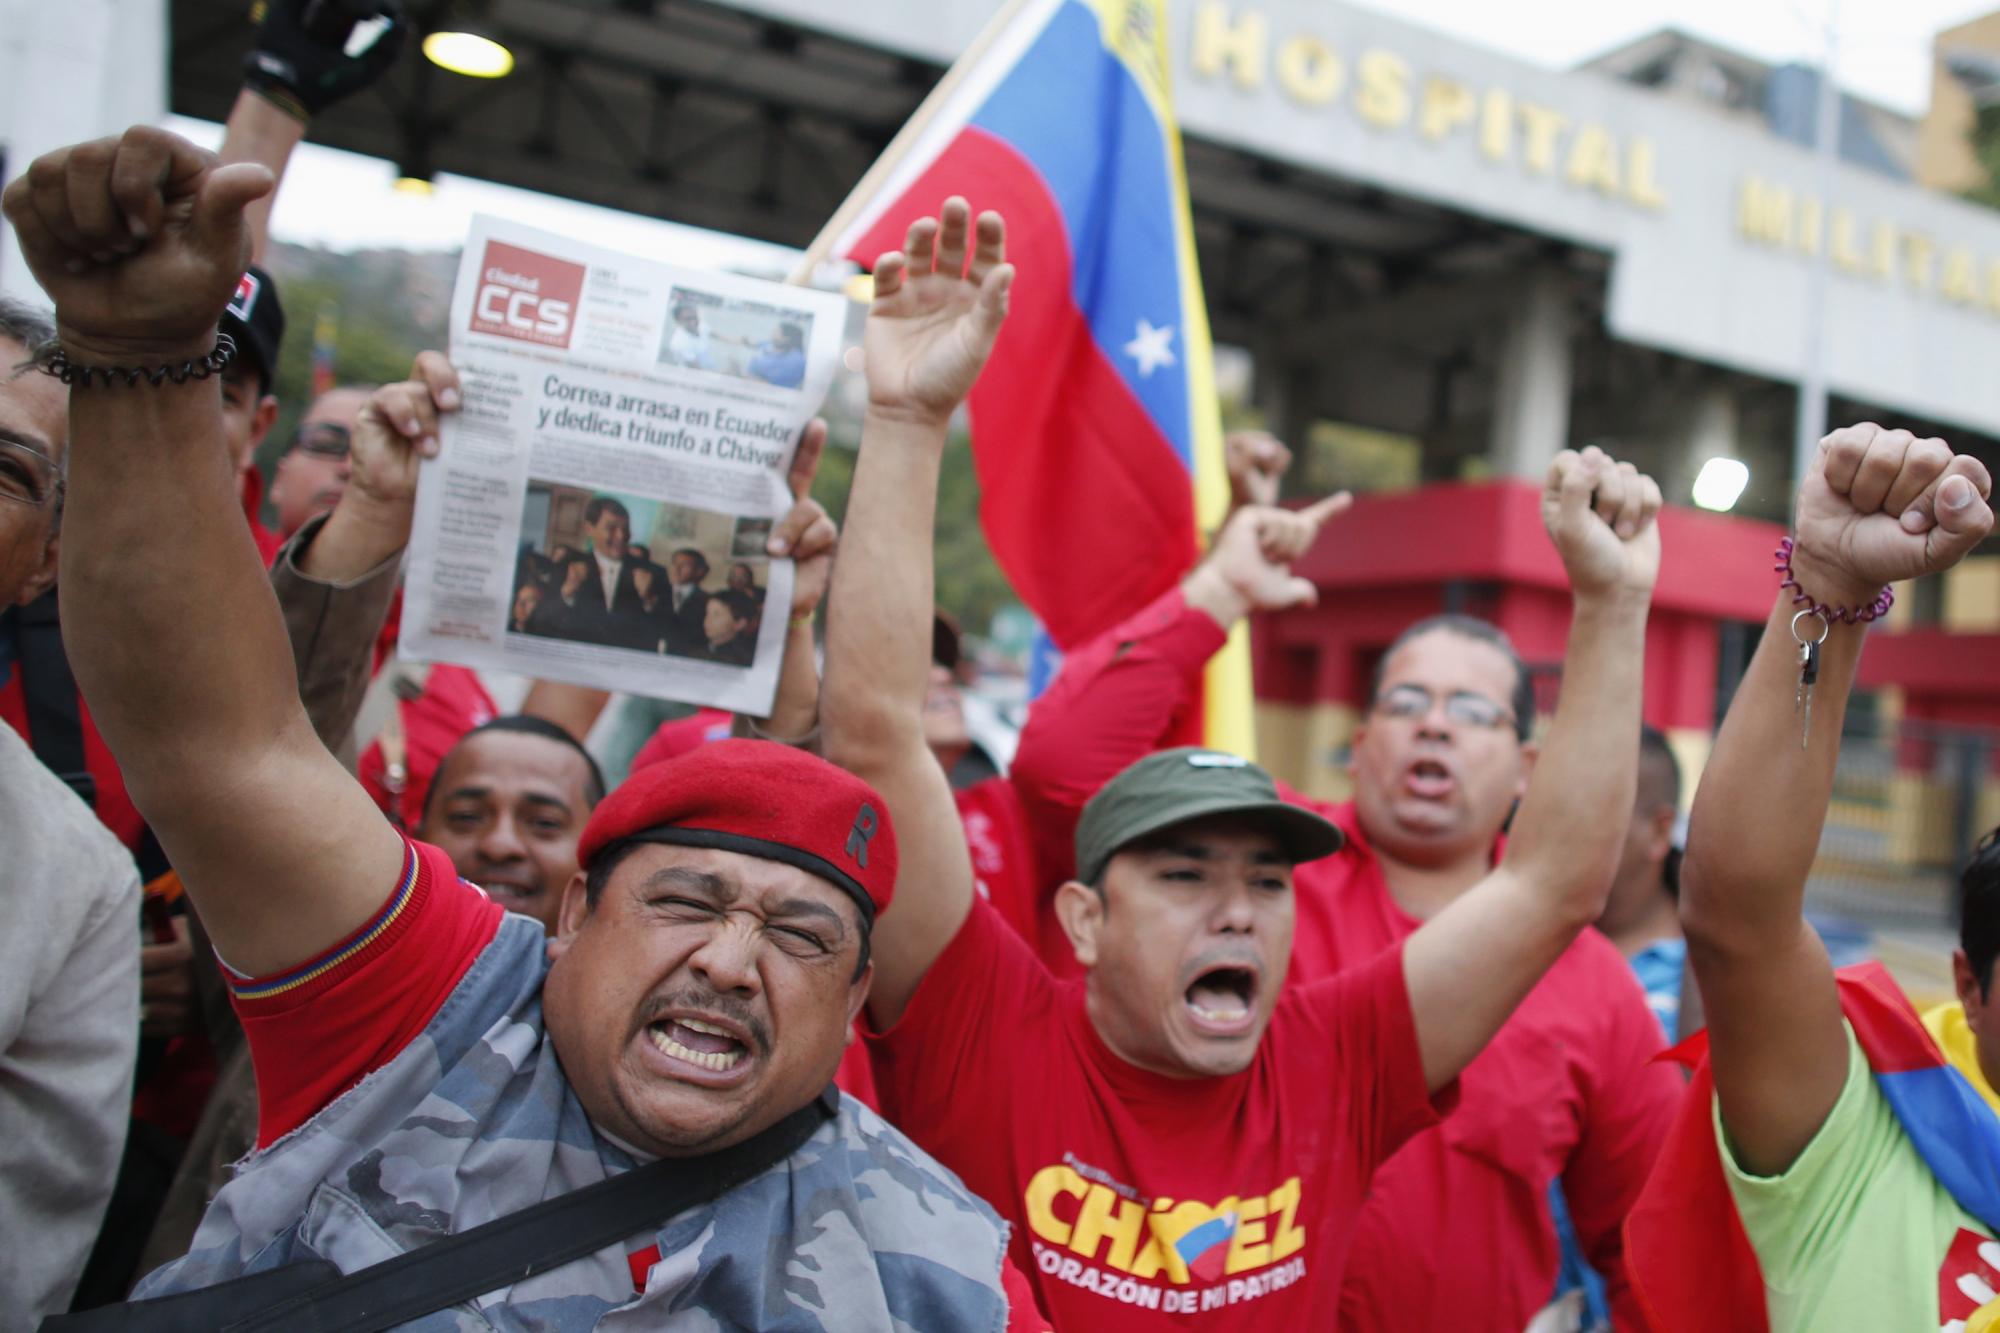 查韦斯返回委内瑞拉 民众欢欣鼓舞政治前景不明朗[1]- 中文国际